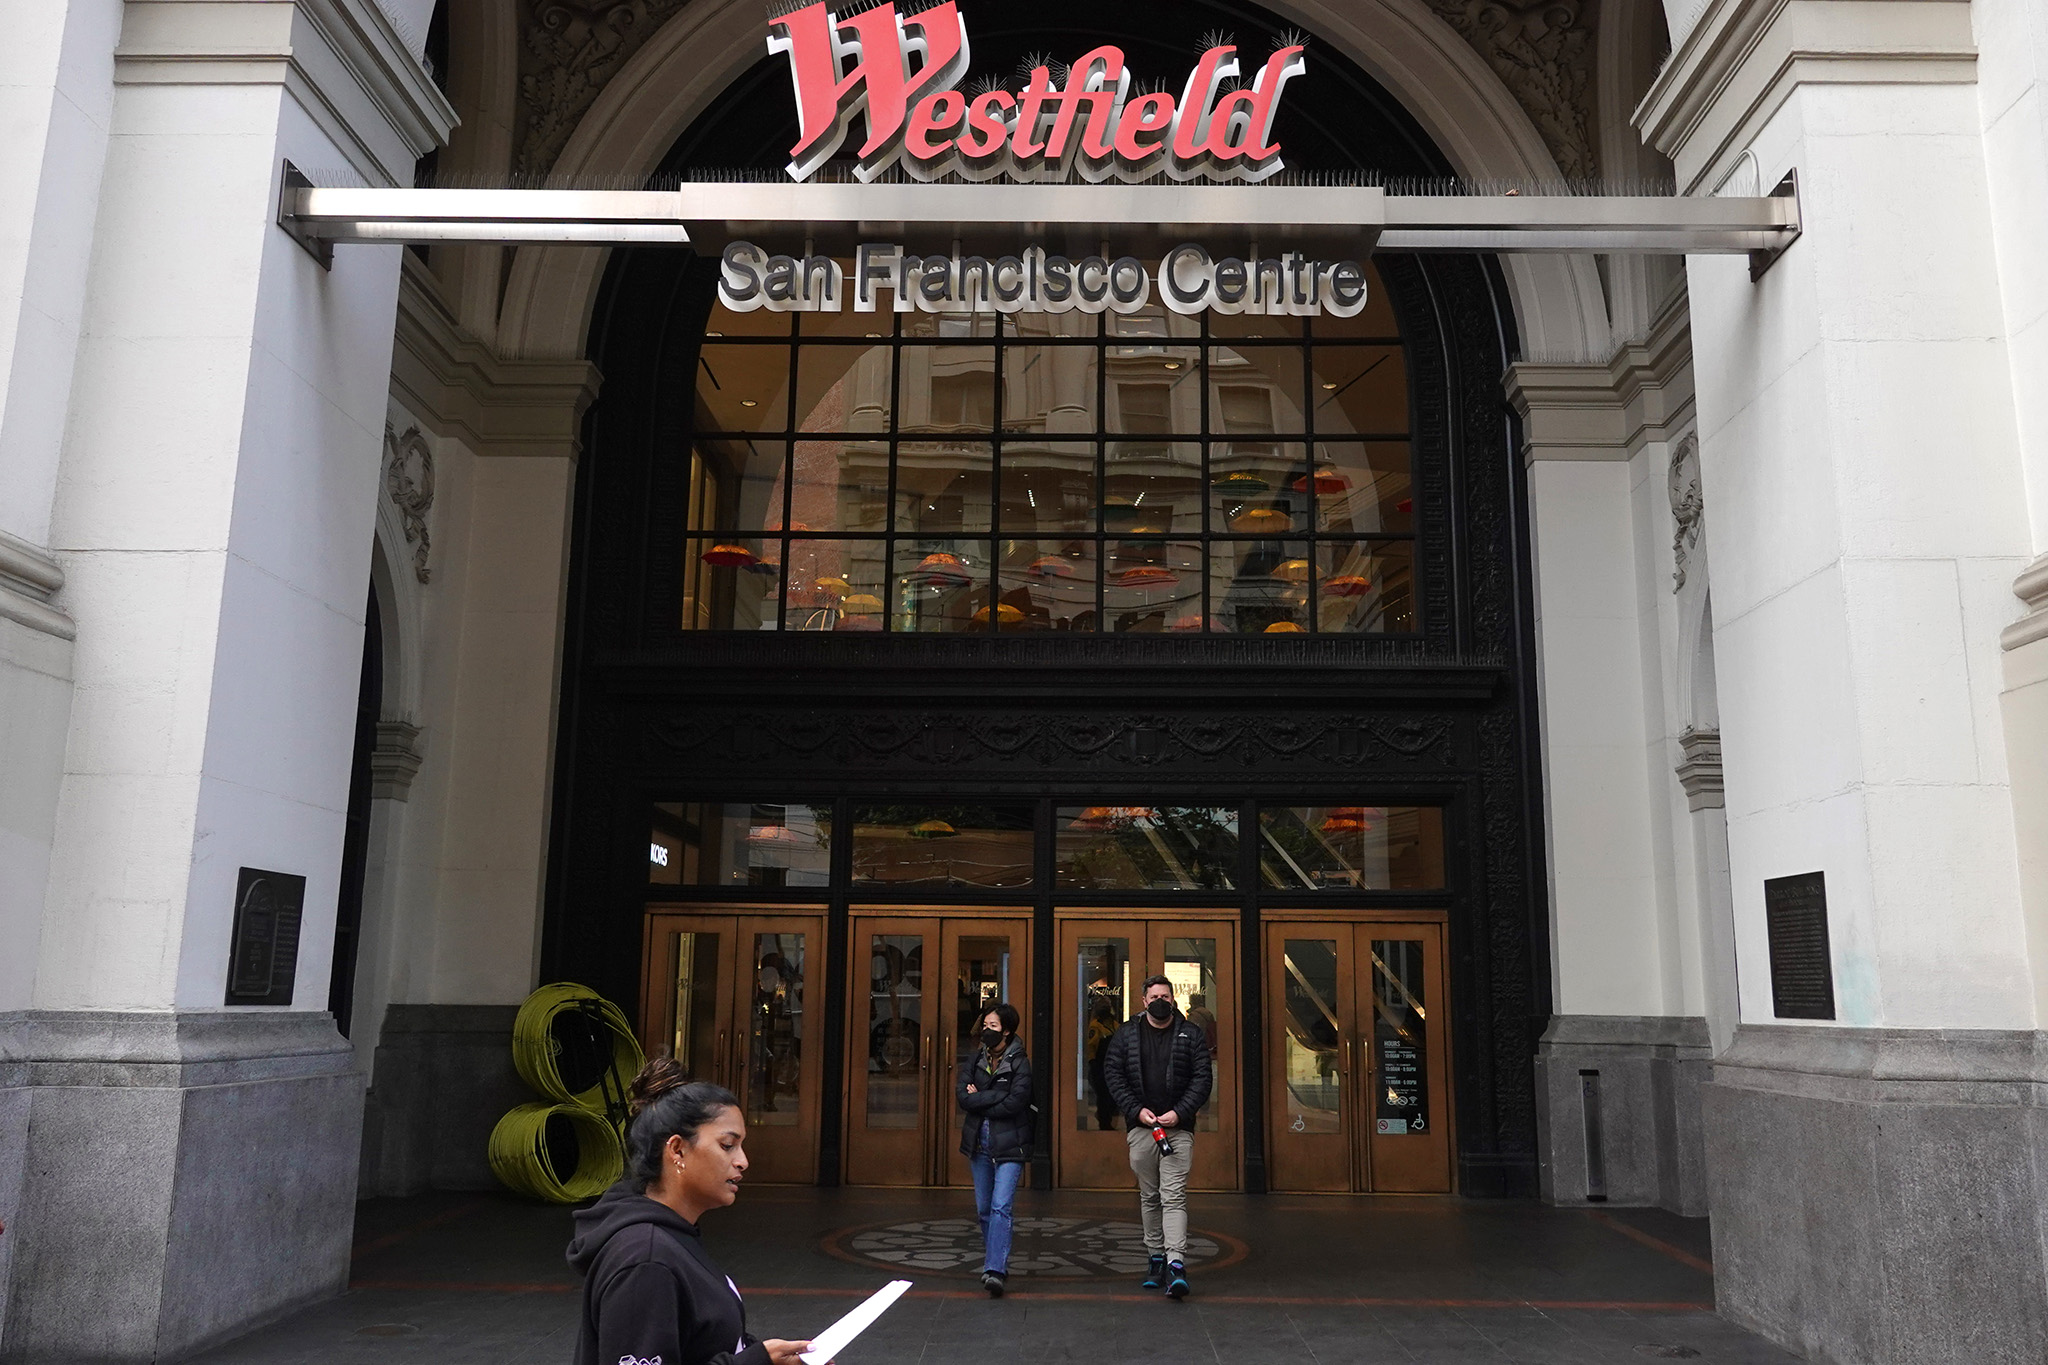 San Francisco Centre - Westfield